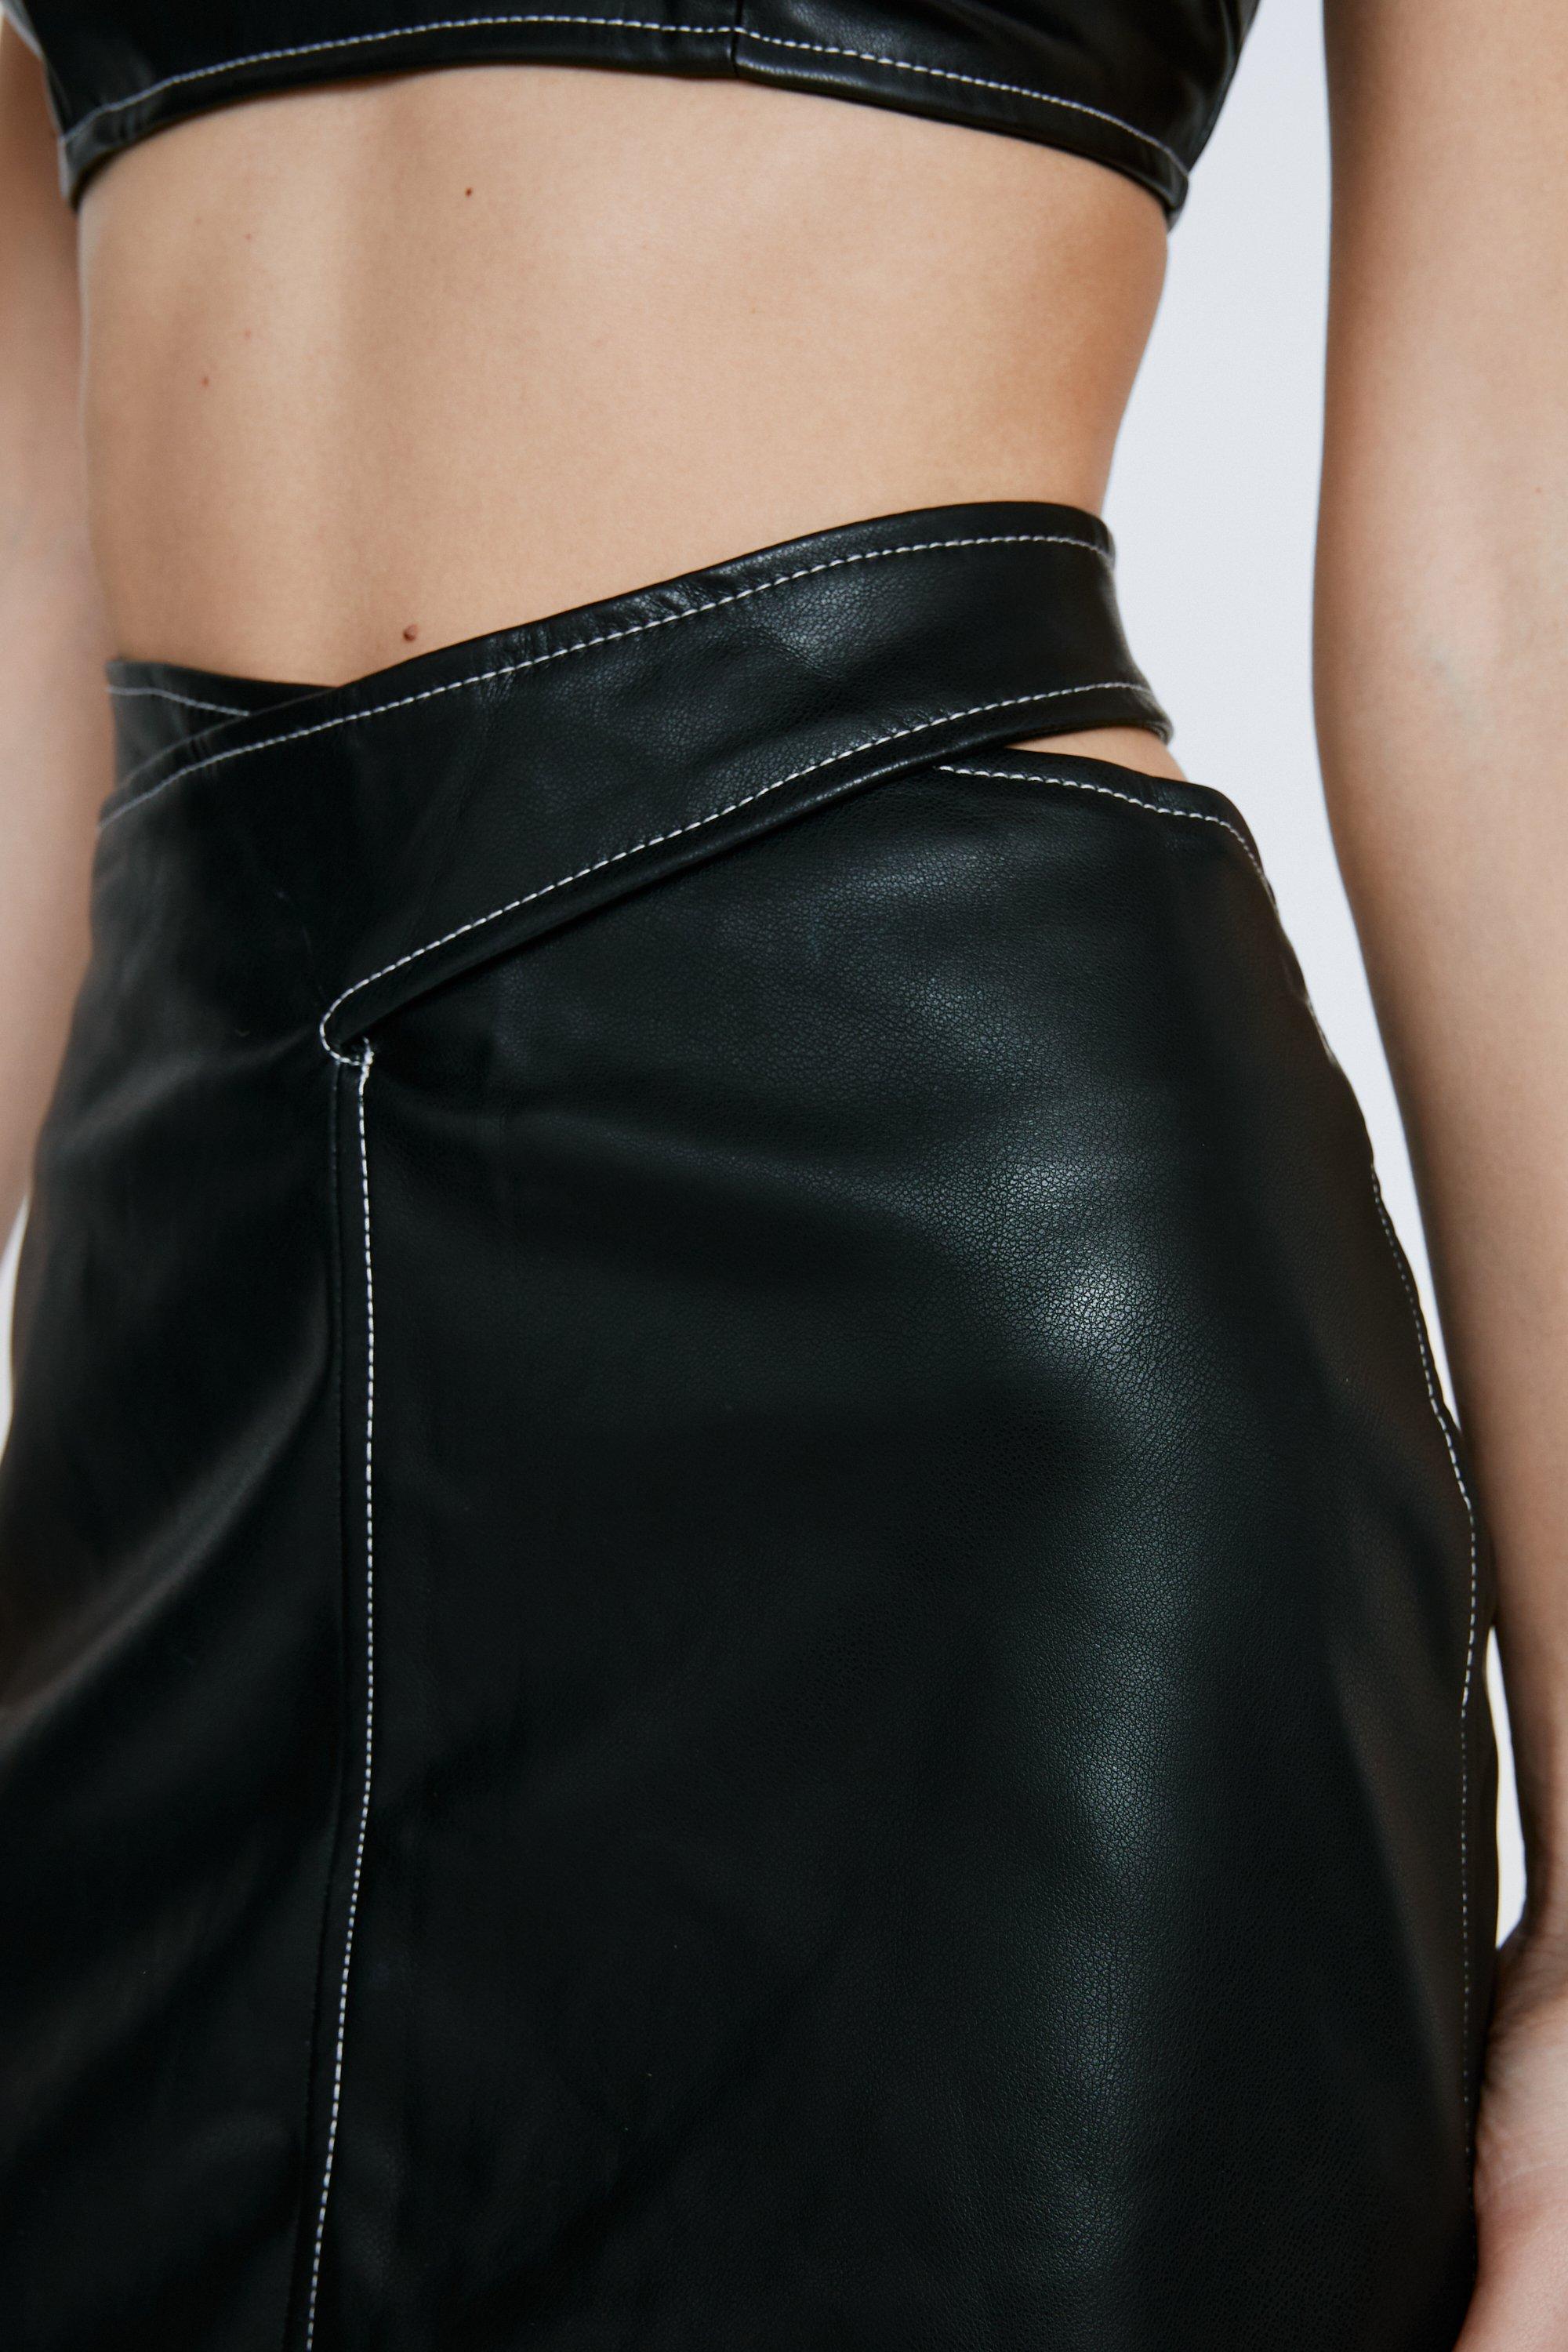 Faux Leather Tie Wrap Midi Skirt